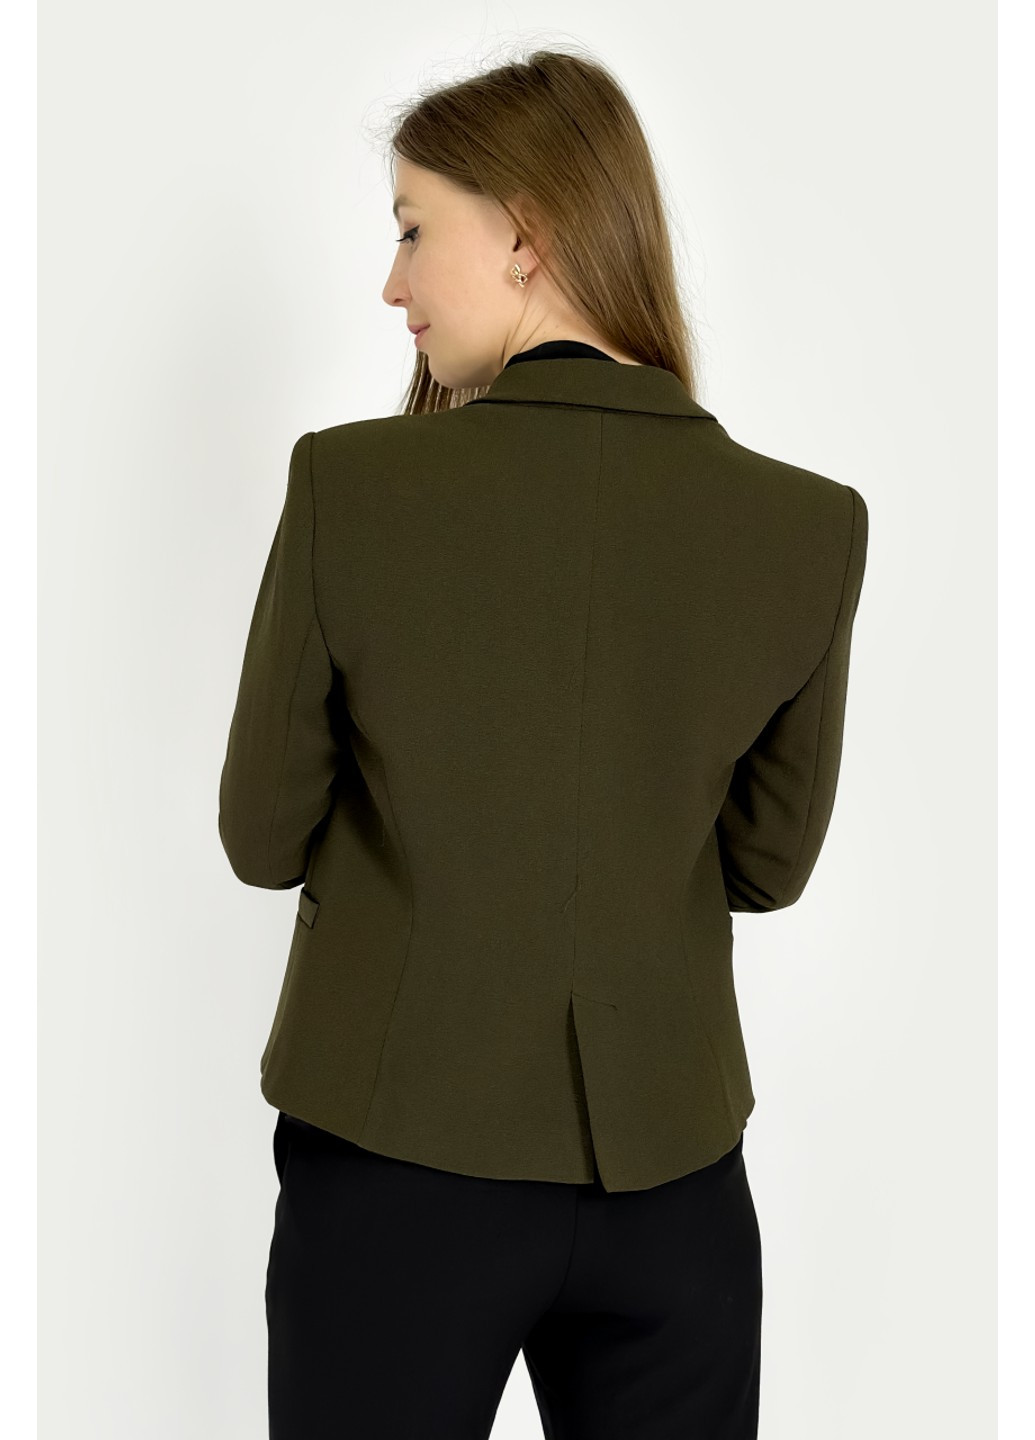 Зеленый женский пиджак 7565/344/505 Zara однотонный - всесезон